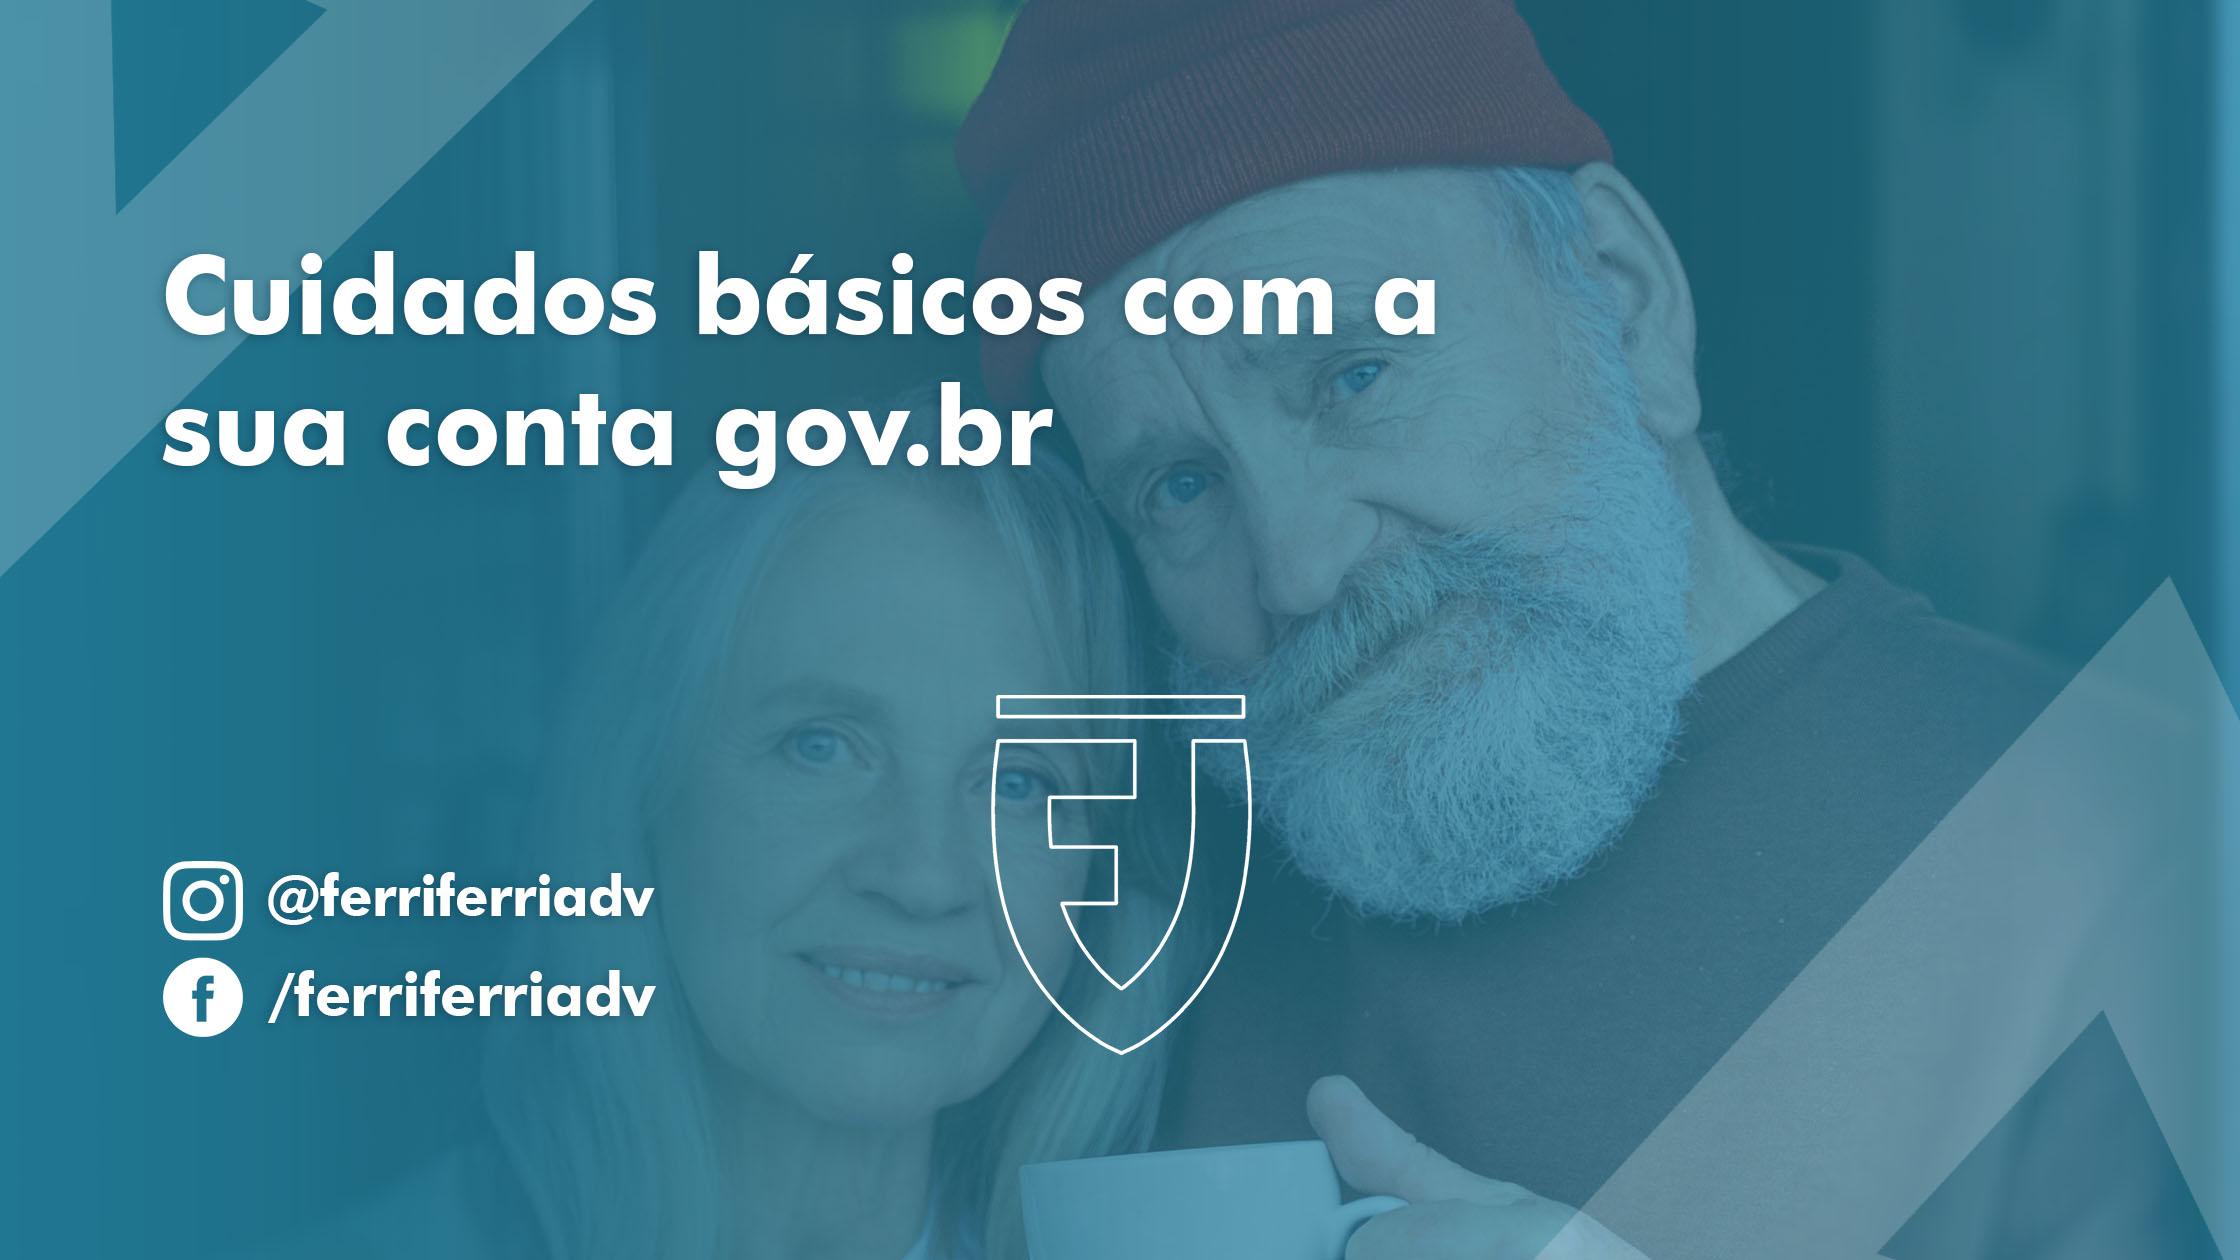 Cuidados básicos com a sua conta gov.br